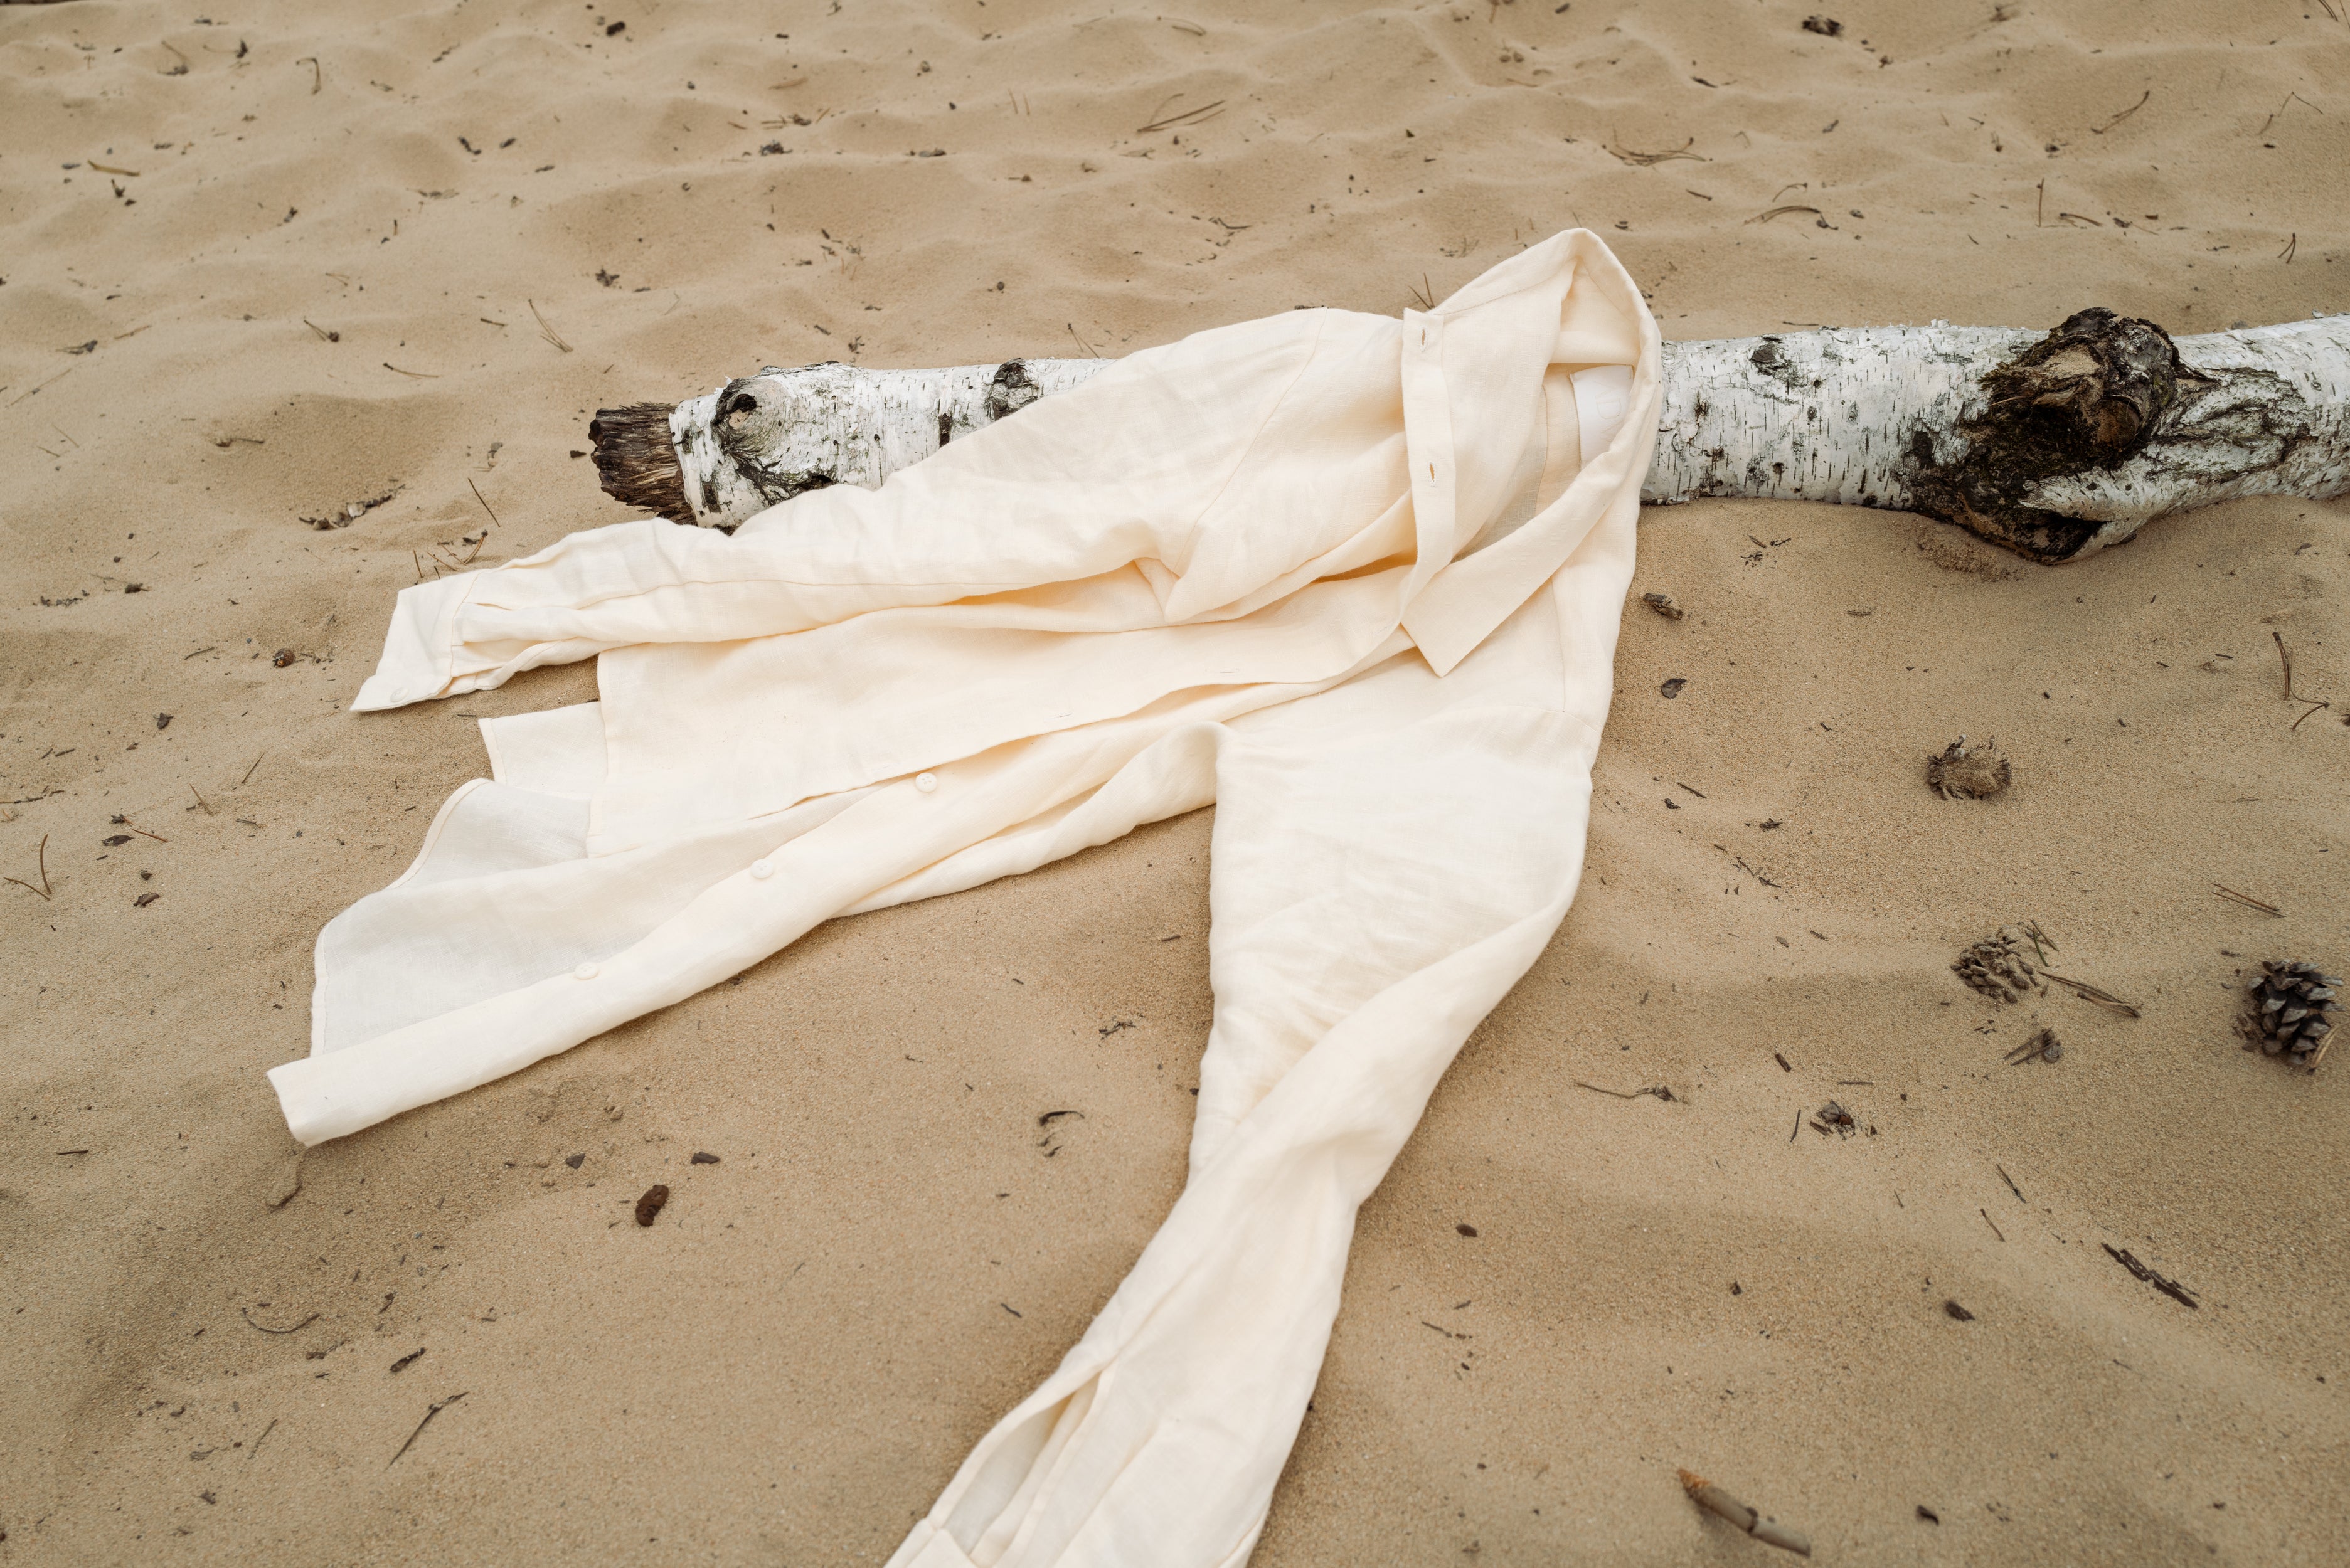 Lněná košile u moře na písku. 